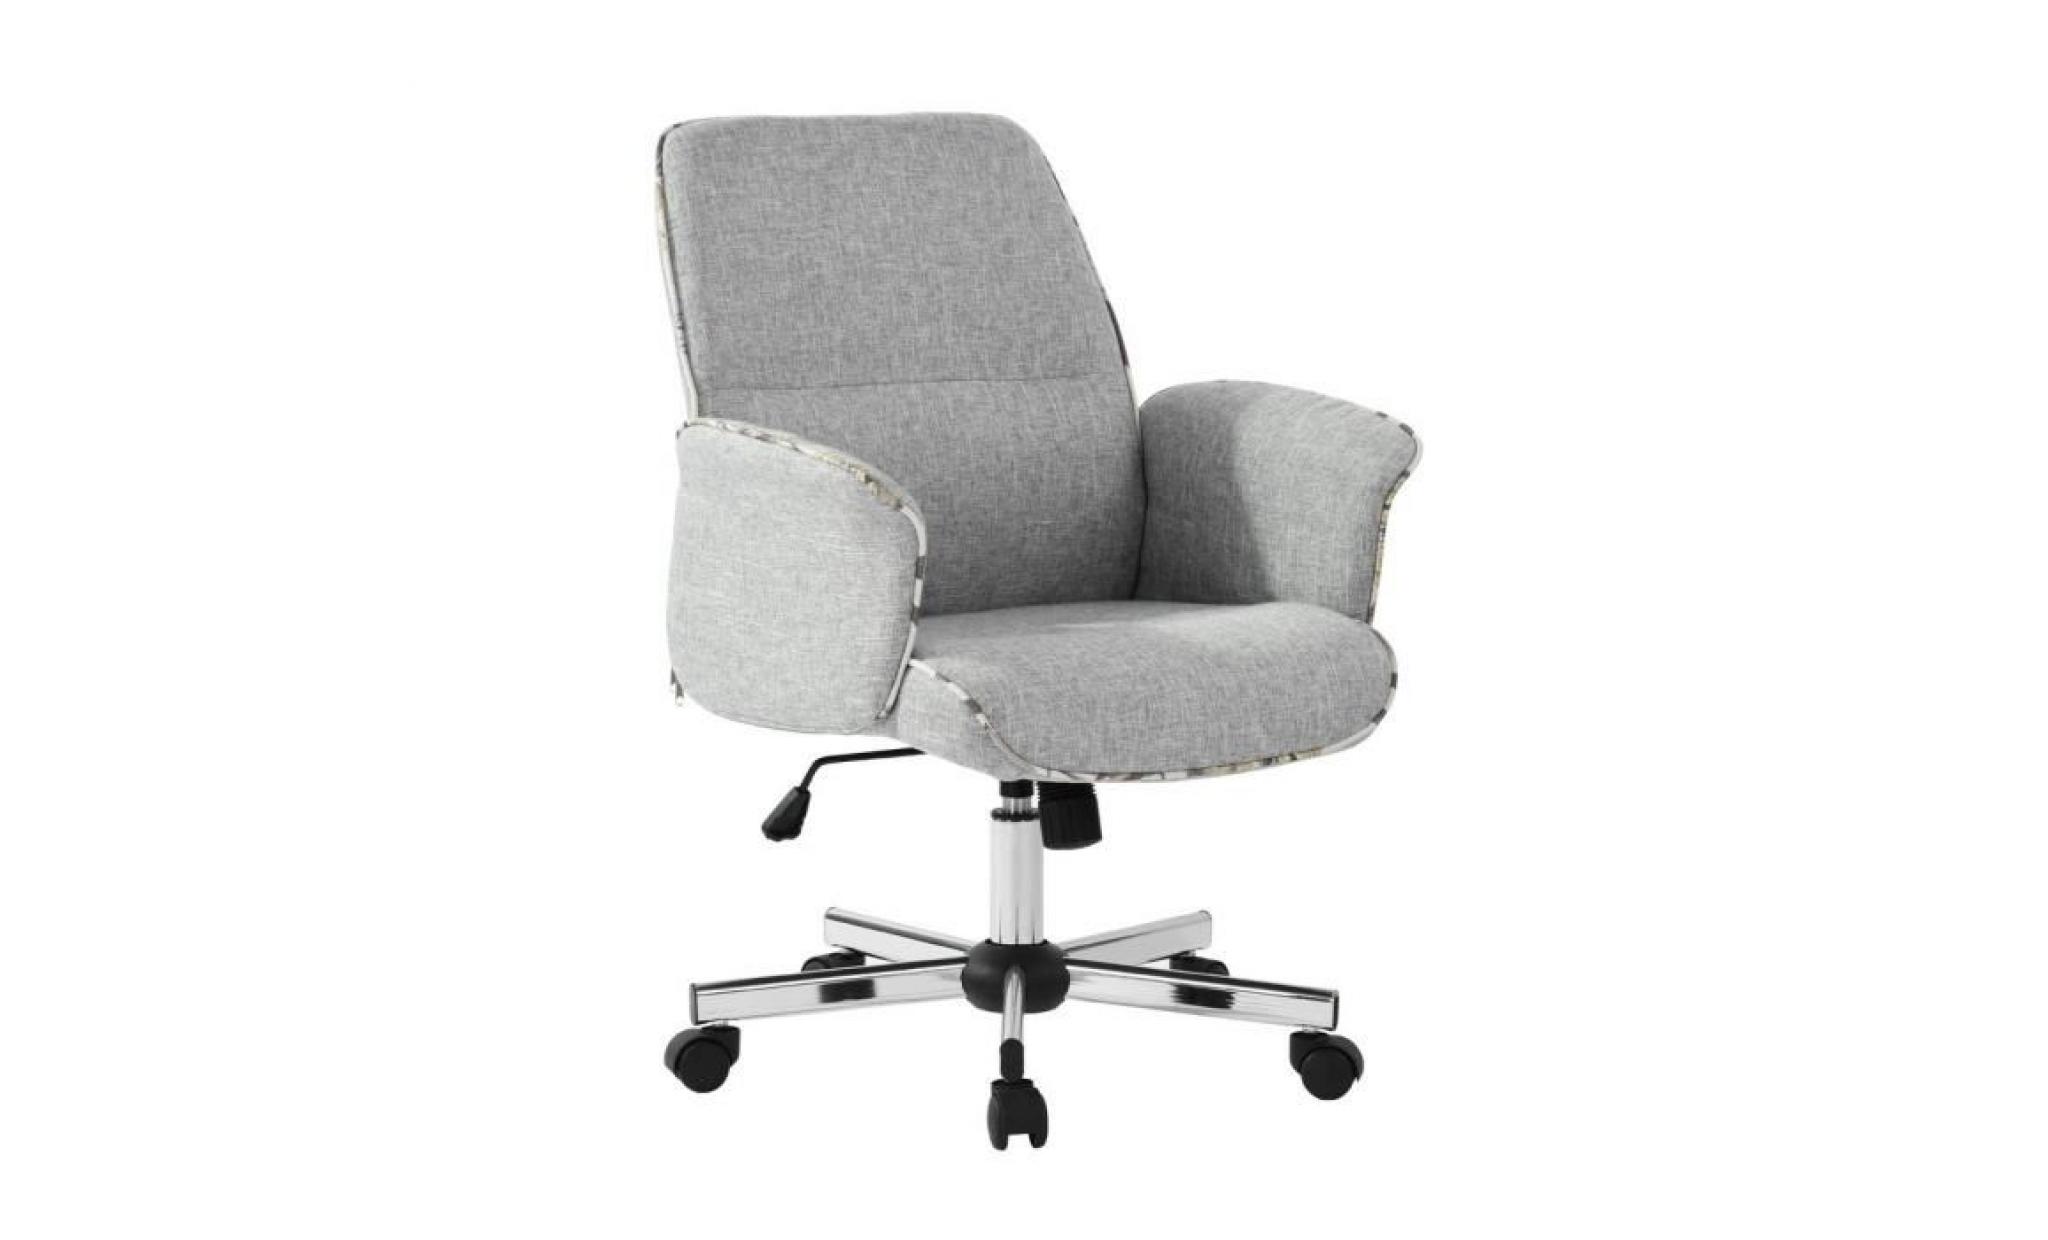 thomasina a fauteuil de bureau en métal chromé   tissu gris   contemporain   l 62 x p 64 cm